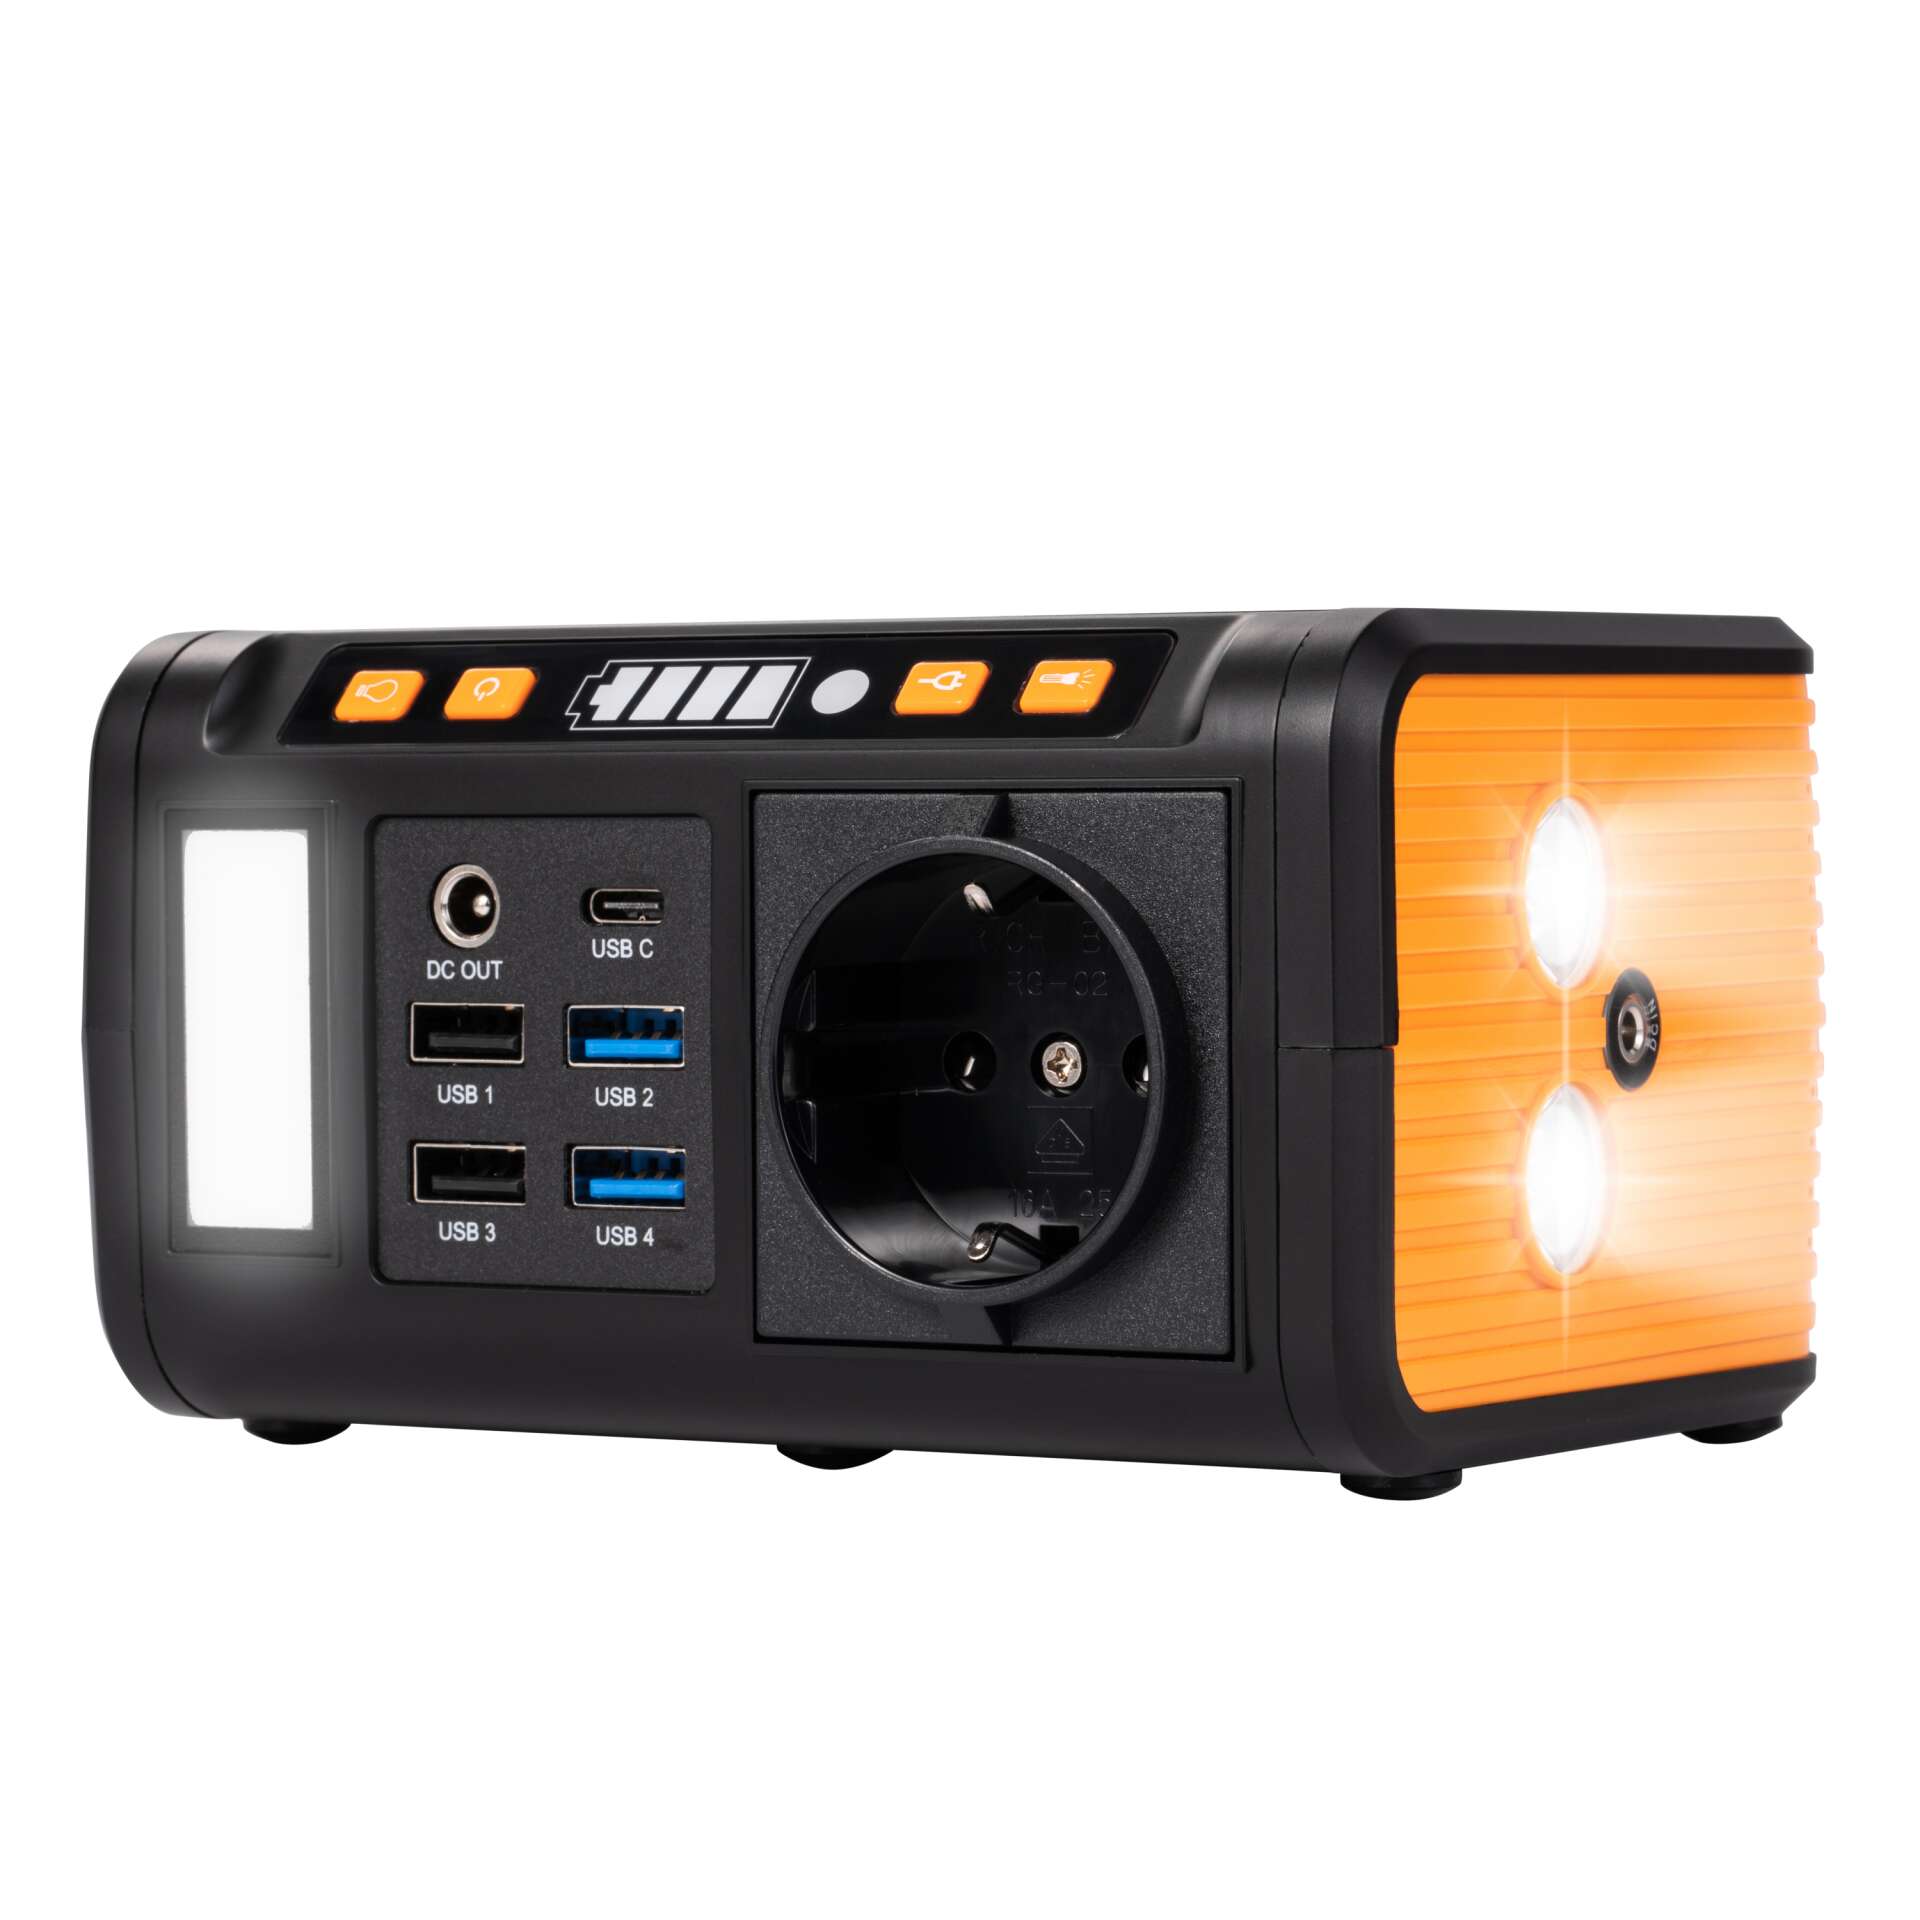 Technaxx tx-205 power bank 20000mah - fekete/narancssárga